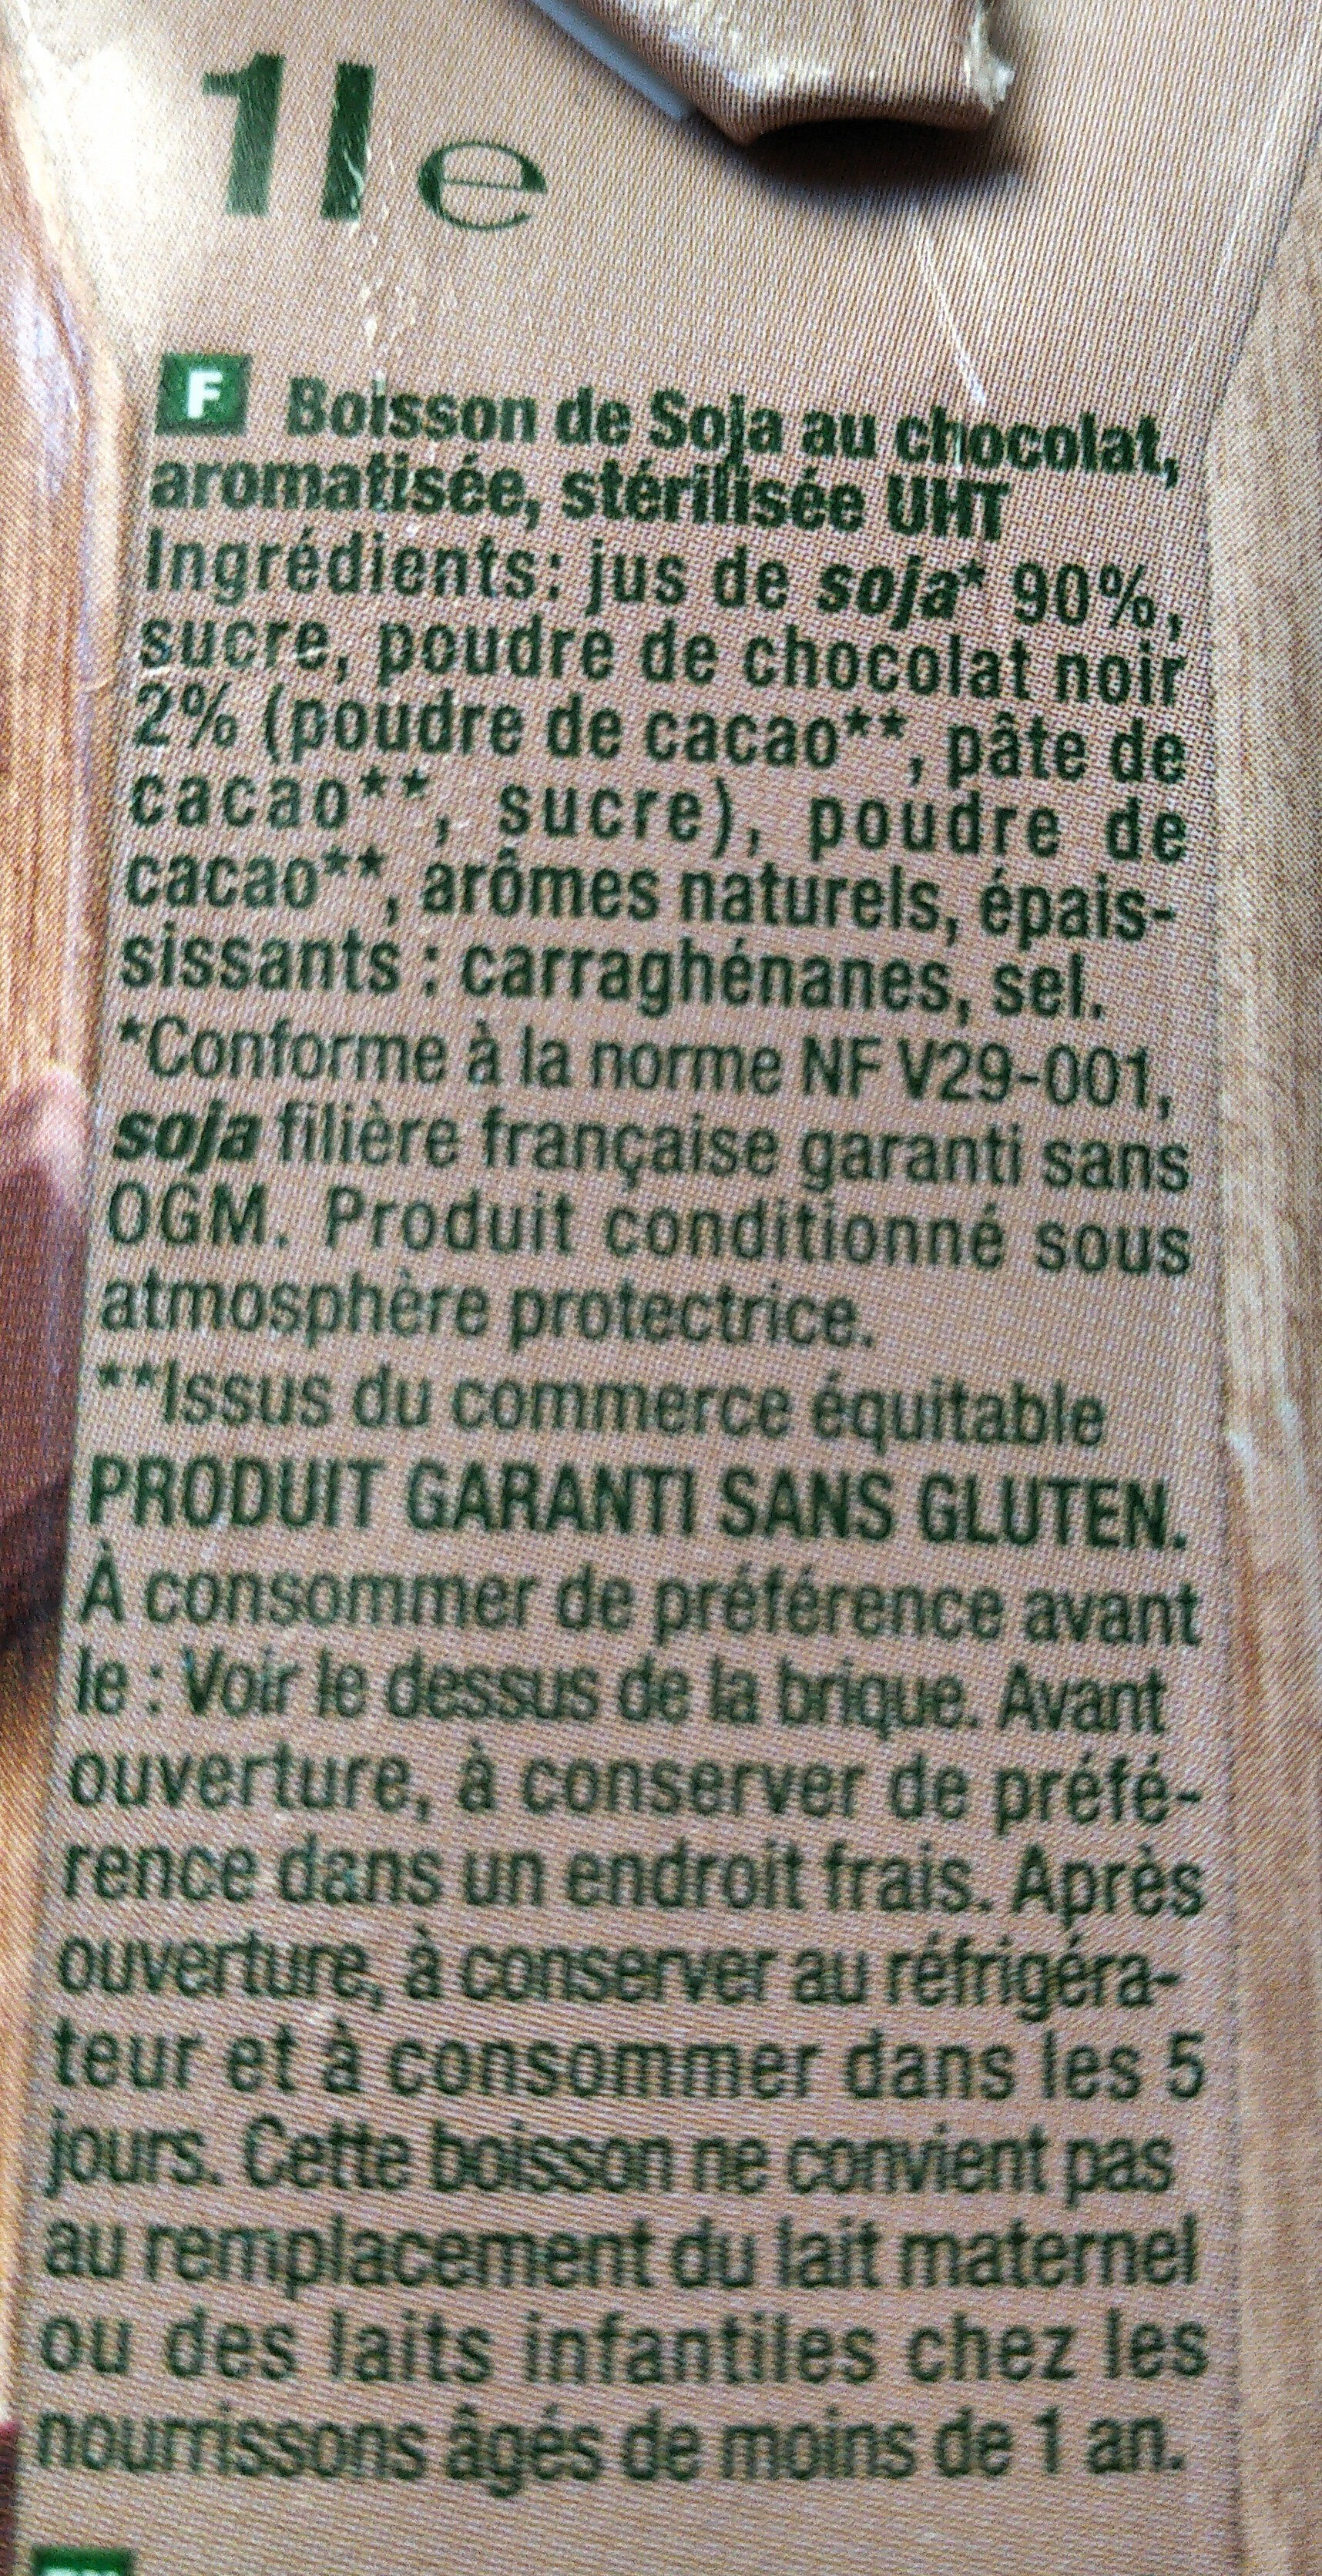 Sojasun chocolat - Ingredients - fr